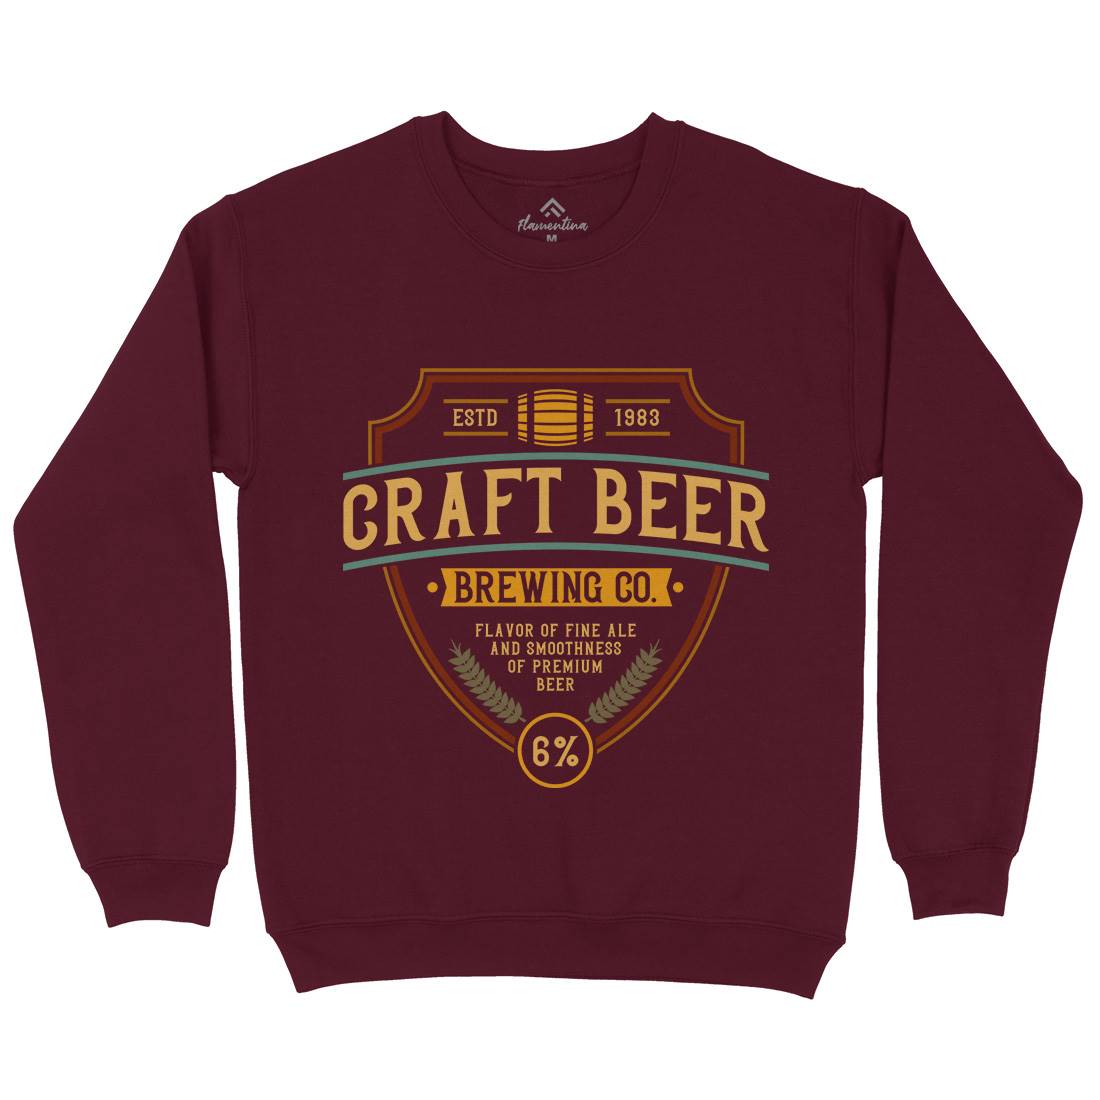 Craft Beer Kids Crew Neck Sweatshirt Drinks C810